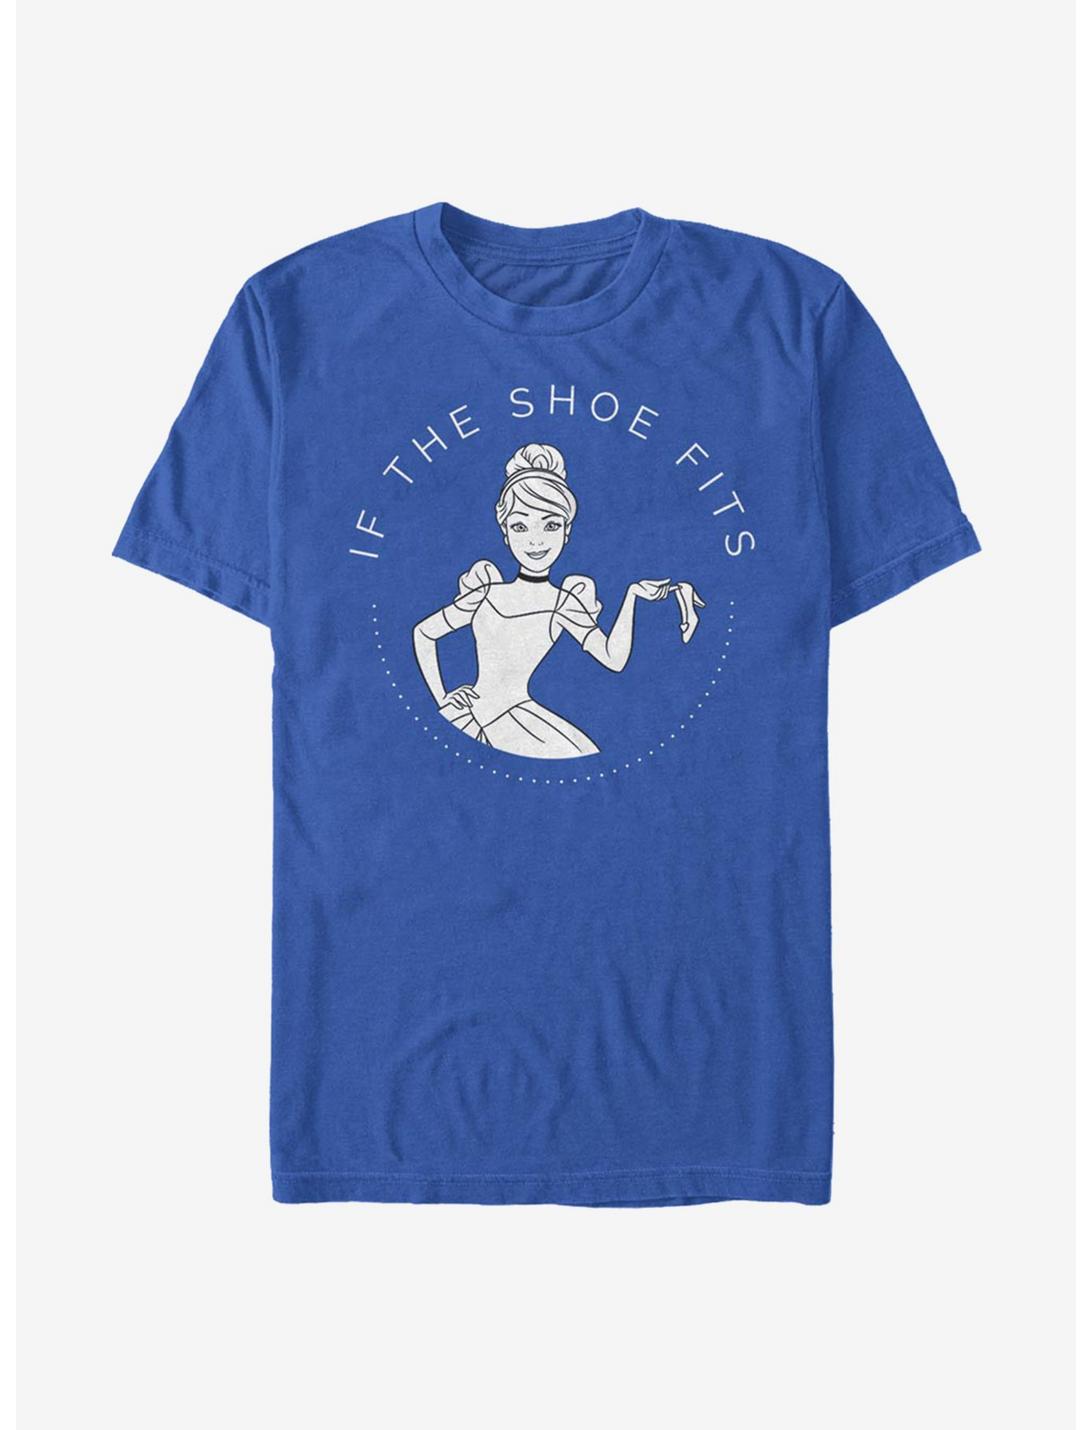 Disney Cinderella Classic Shoe Fits T-Shirt, ROYAL, hi-res